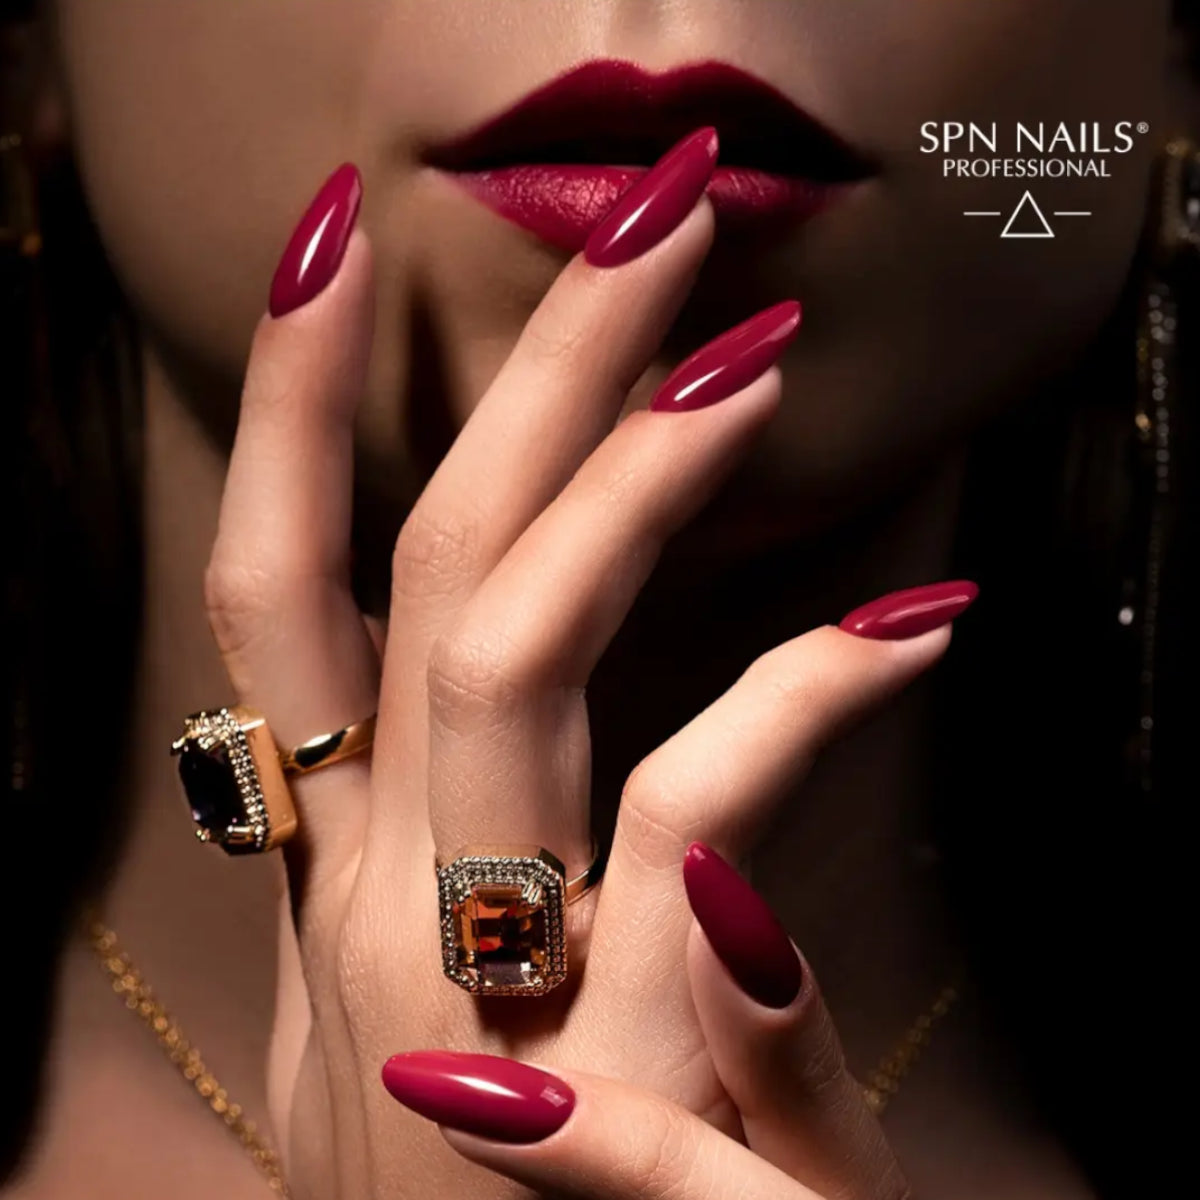 SPN Nails UV/LED Gel Polish 1000 Femme Fatale Swatch